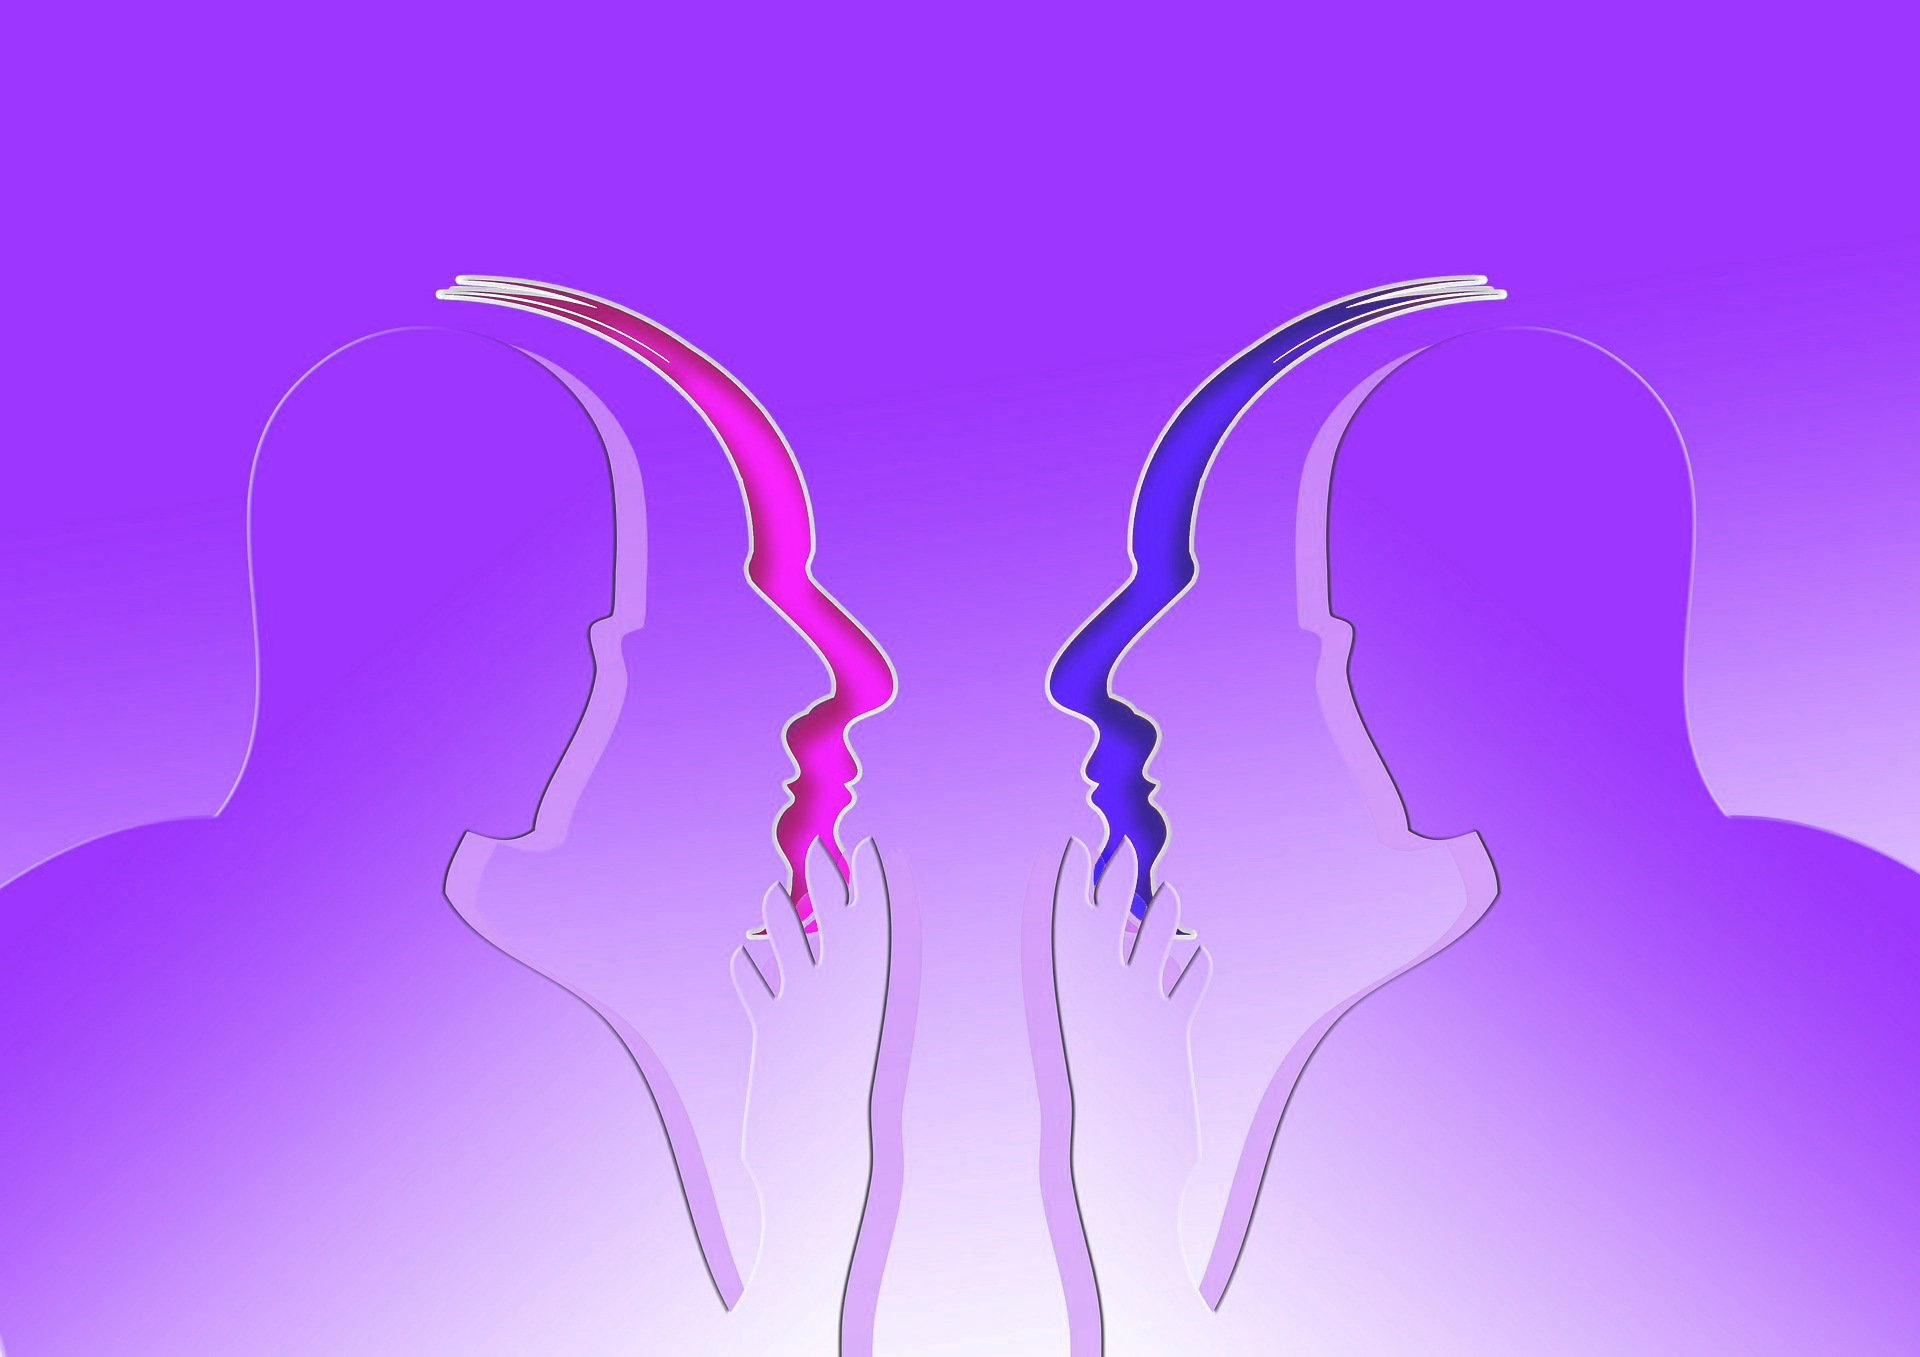 Zu sehen ist eine abstrakte Grafik mit zwei Silhouetten, die sich gegenüber sitzen, so als würden sie sich unterhalten. Die Grafik ist in den Farben der bisexuellen Pride-Flagge gehalten.